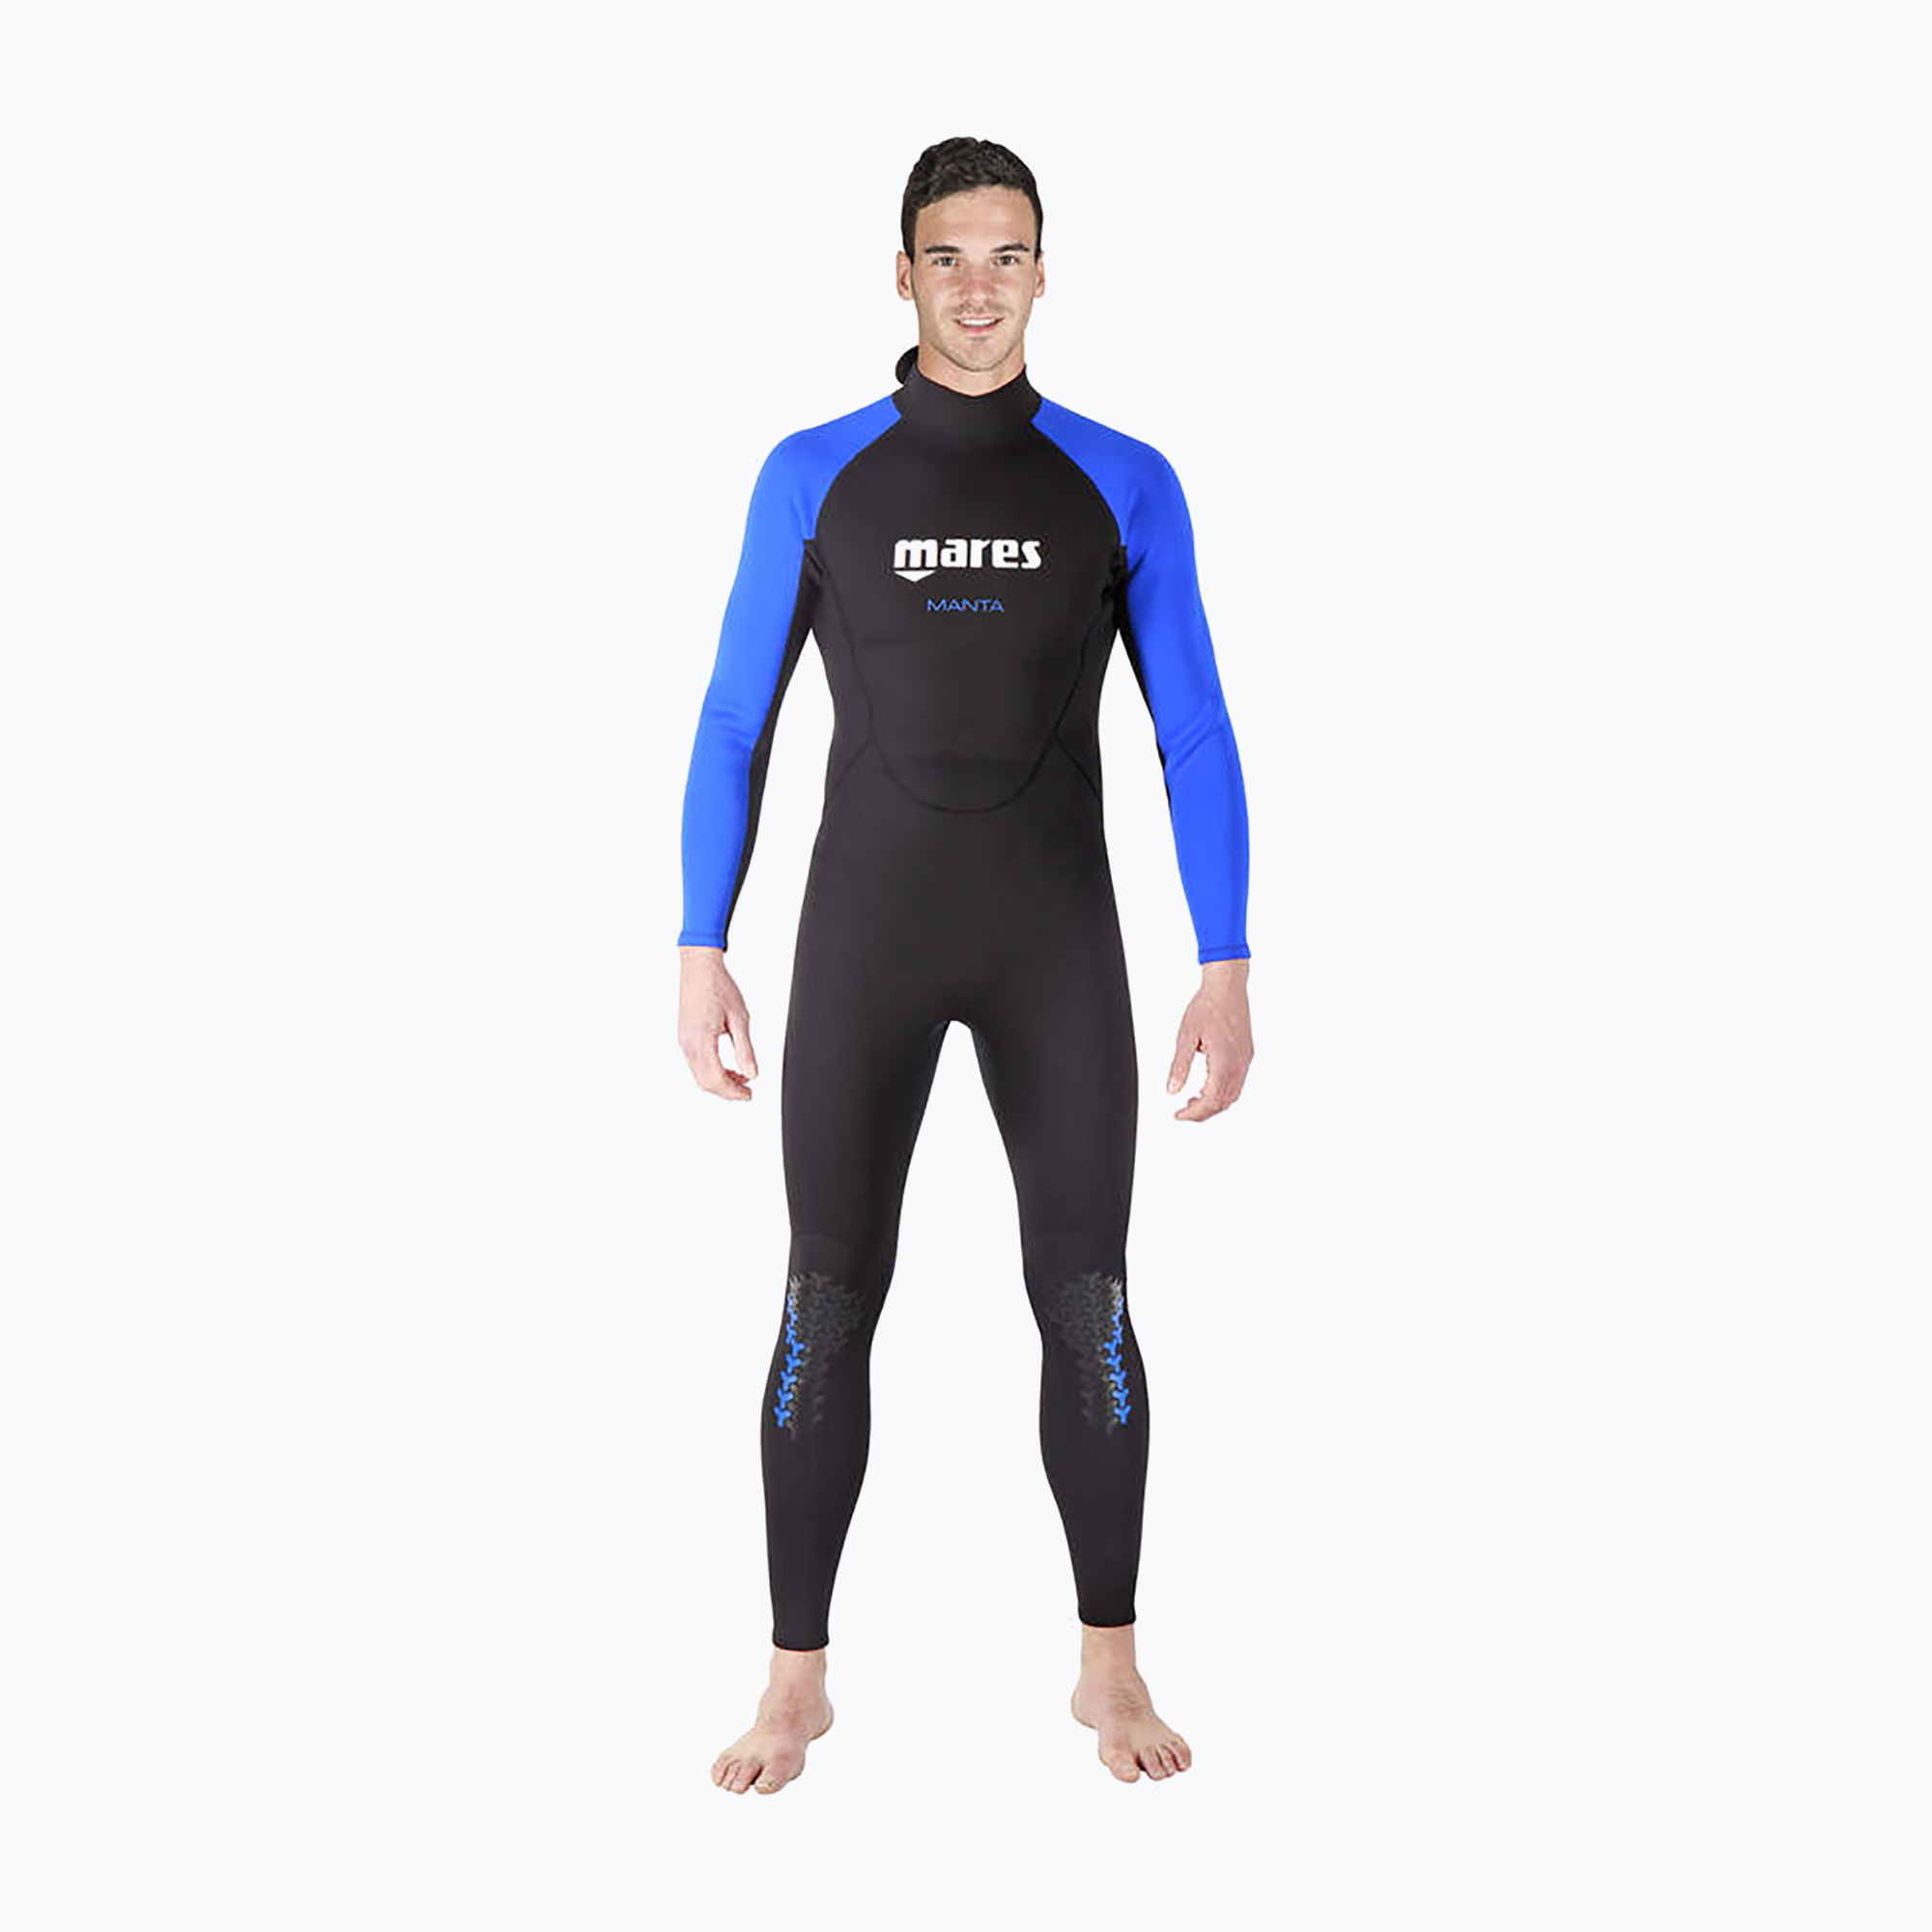 Pánsky potápačský neoprénový oblek Mares Manta black and blue 412456